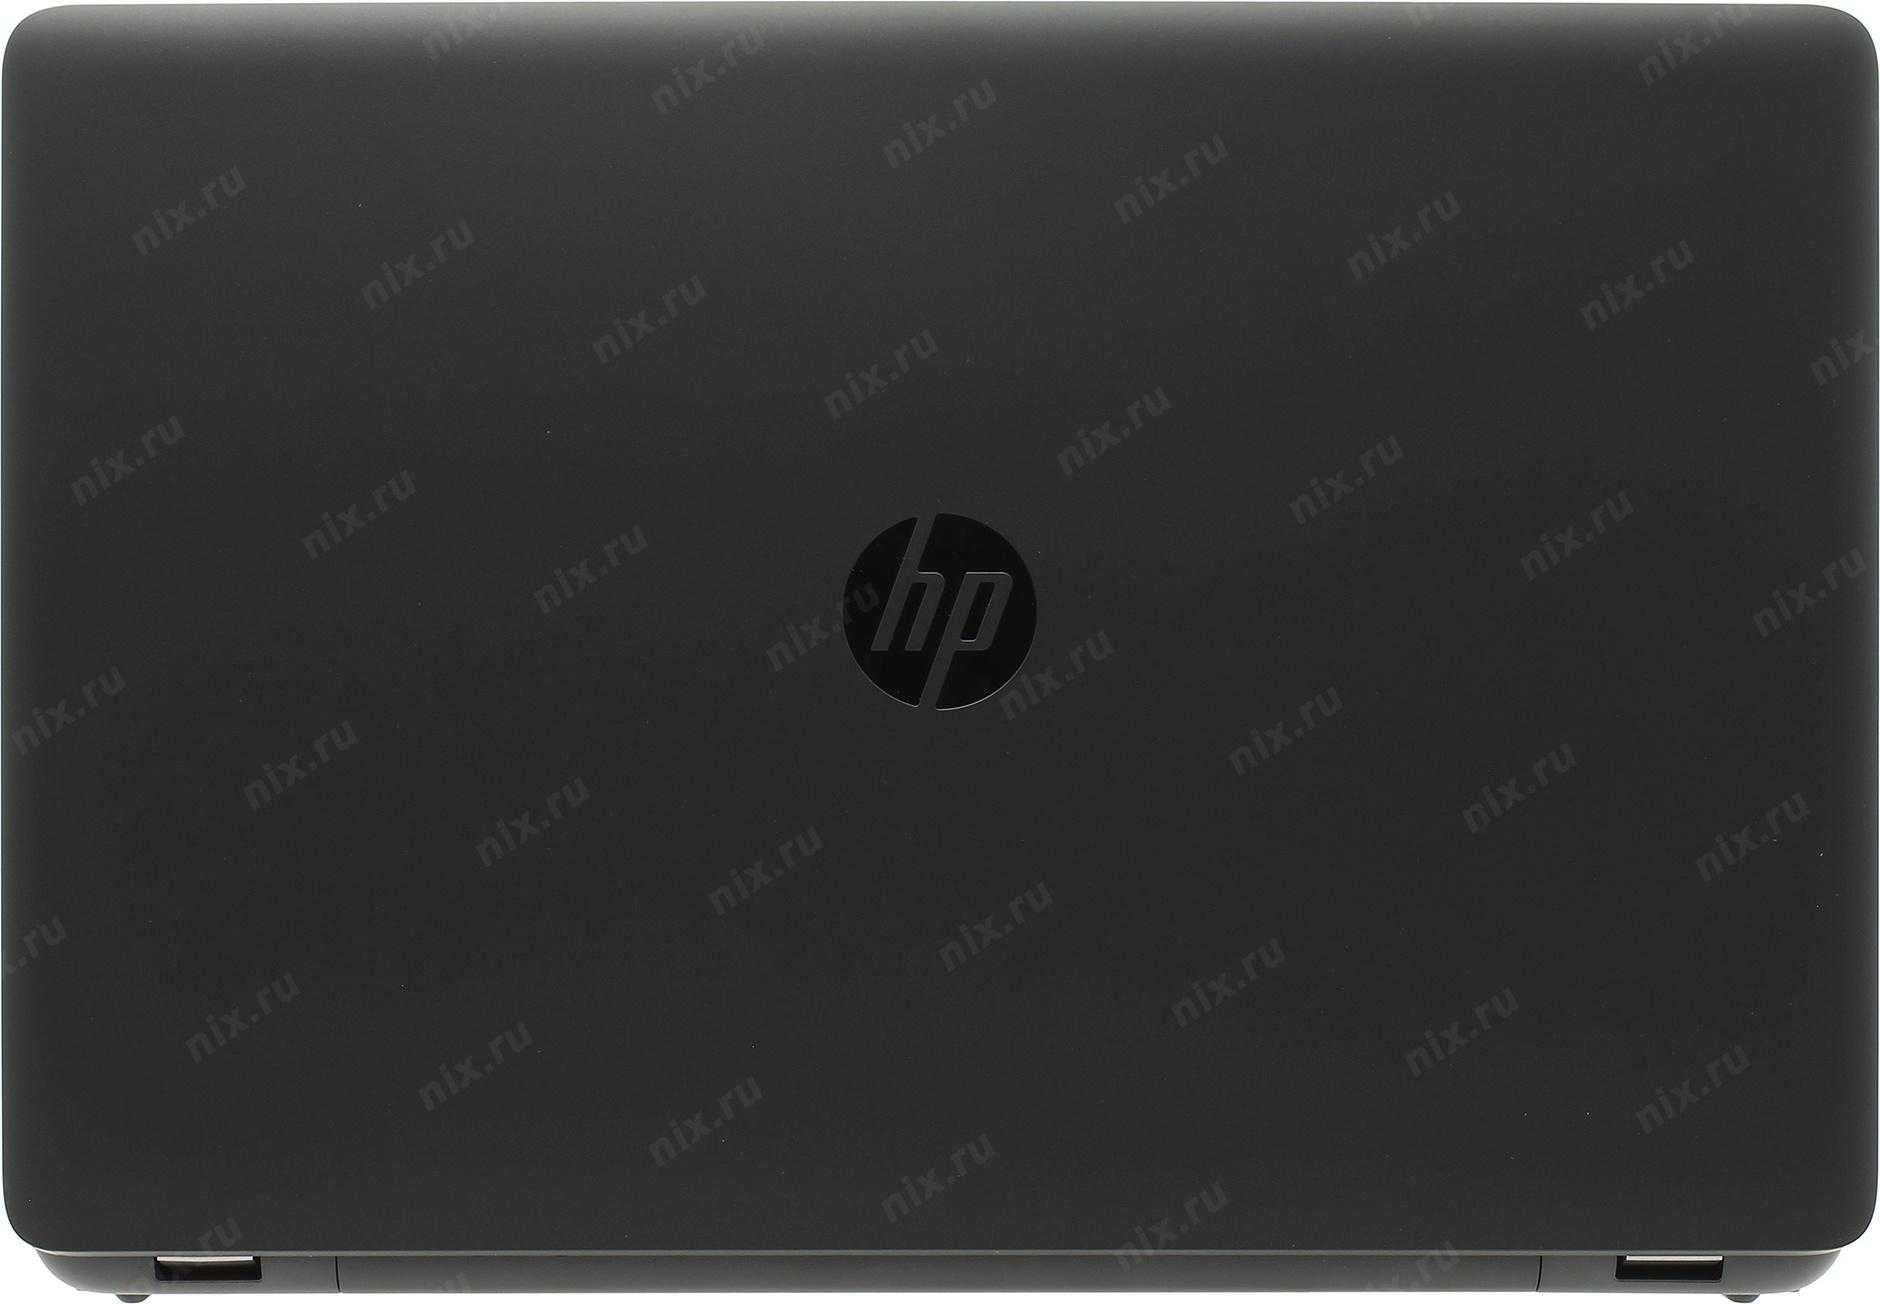 Ноутбук hp probook 470 g2 (k9j99ea) — купить, цена и характеристики, отзывы